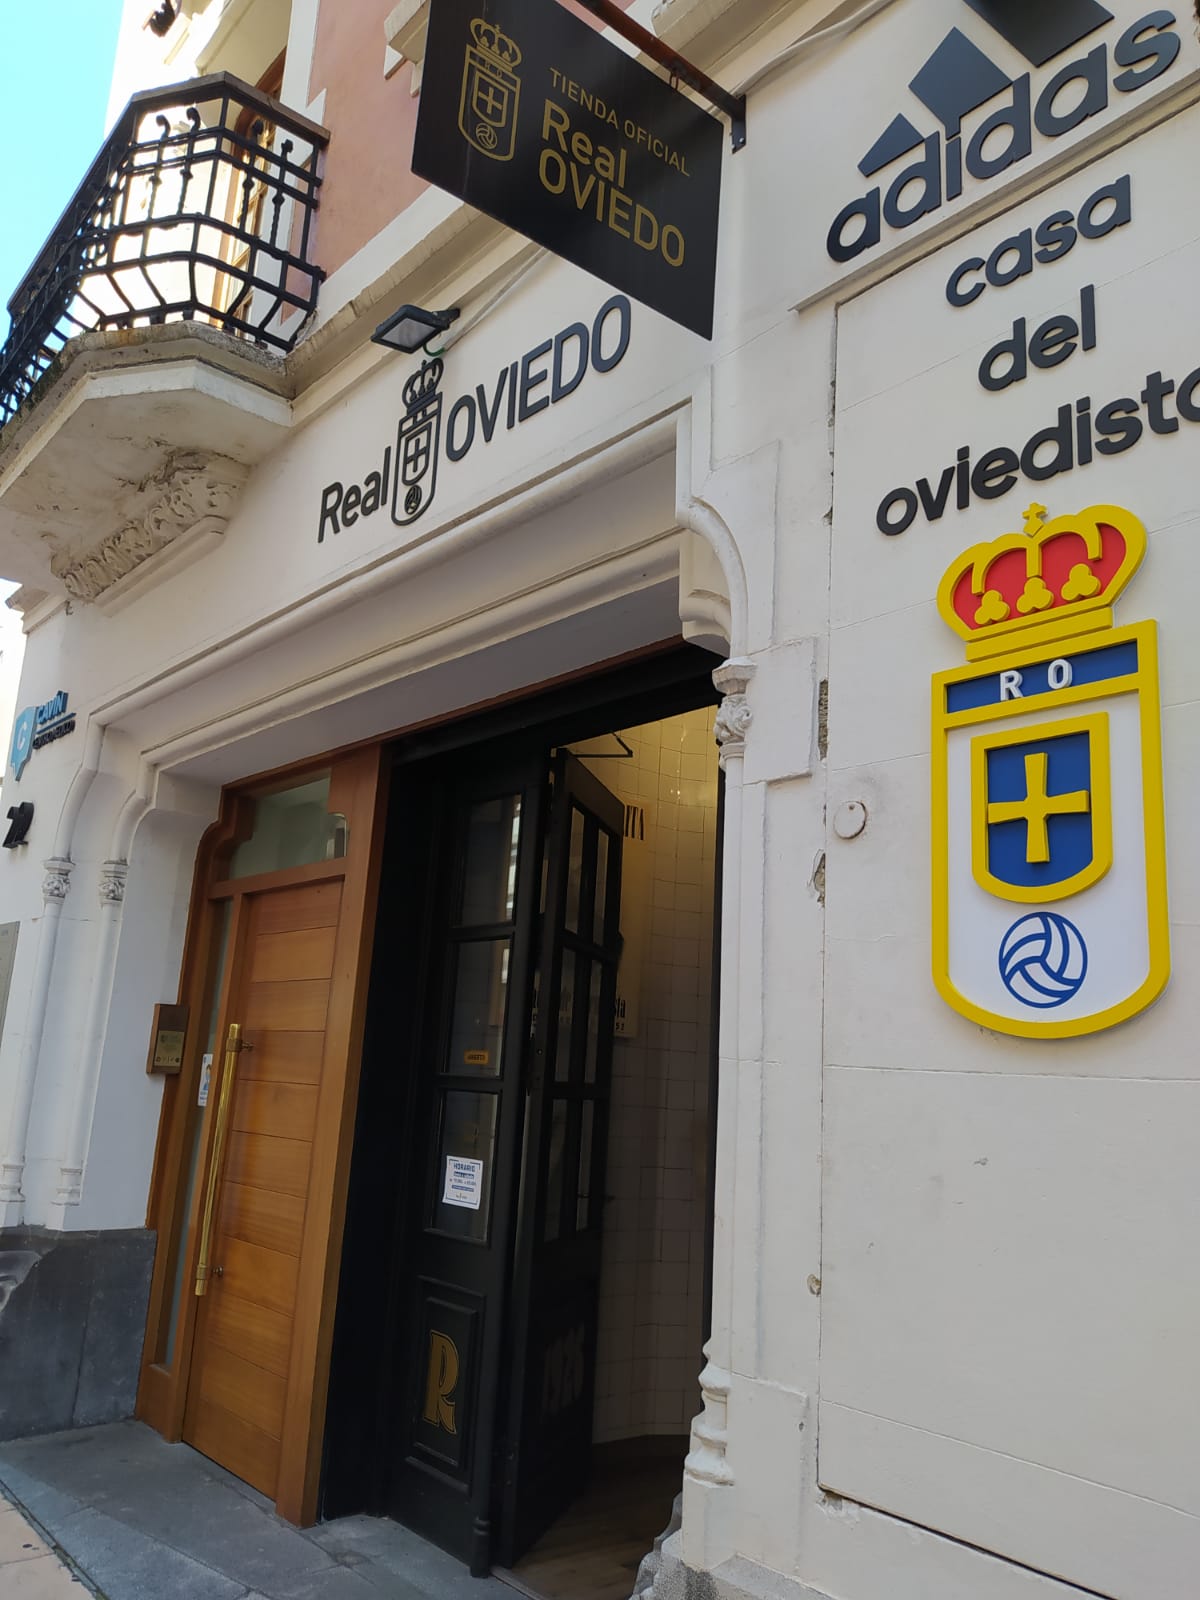 CreoEnOviedo Tienda Oficial Oviedo Casa del Oviedista